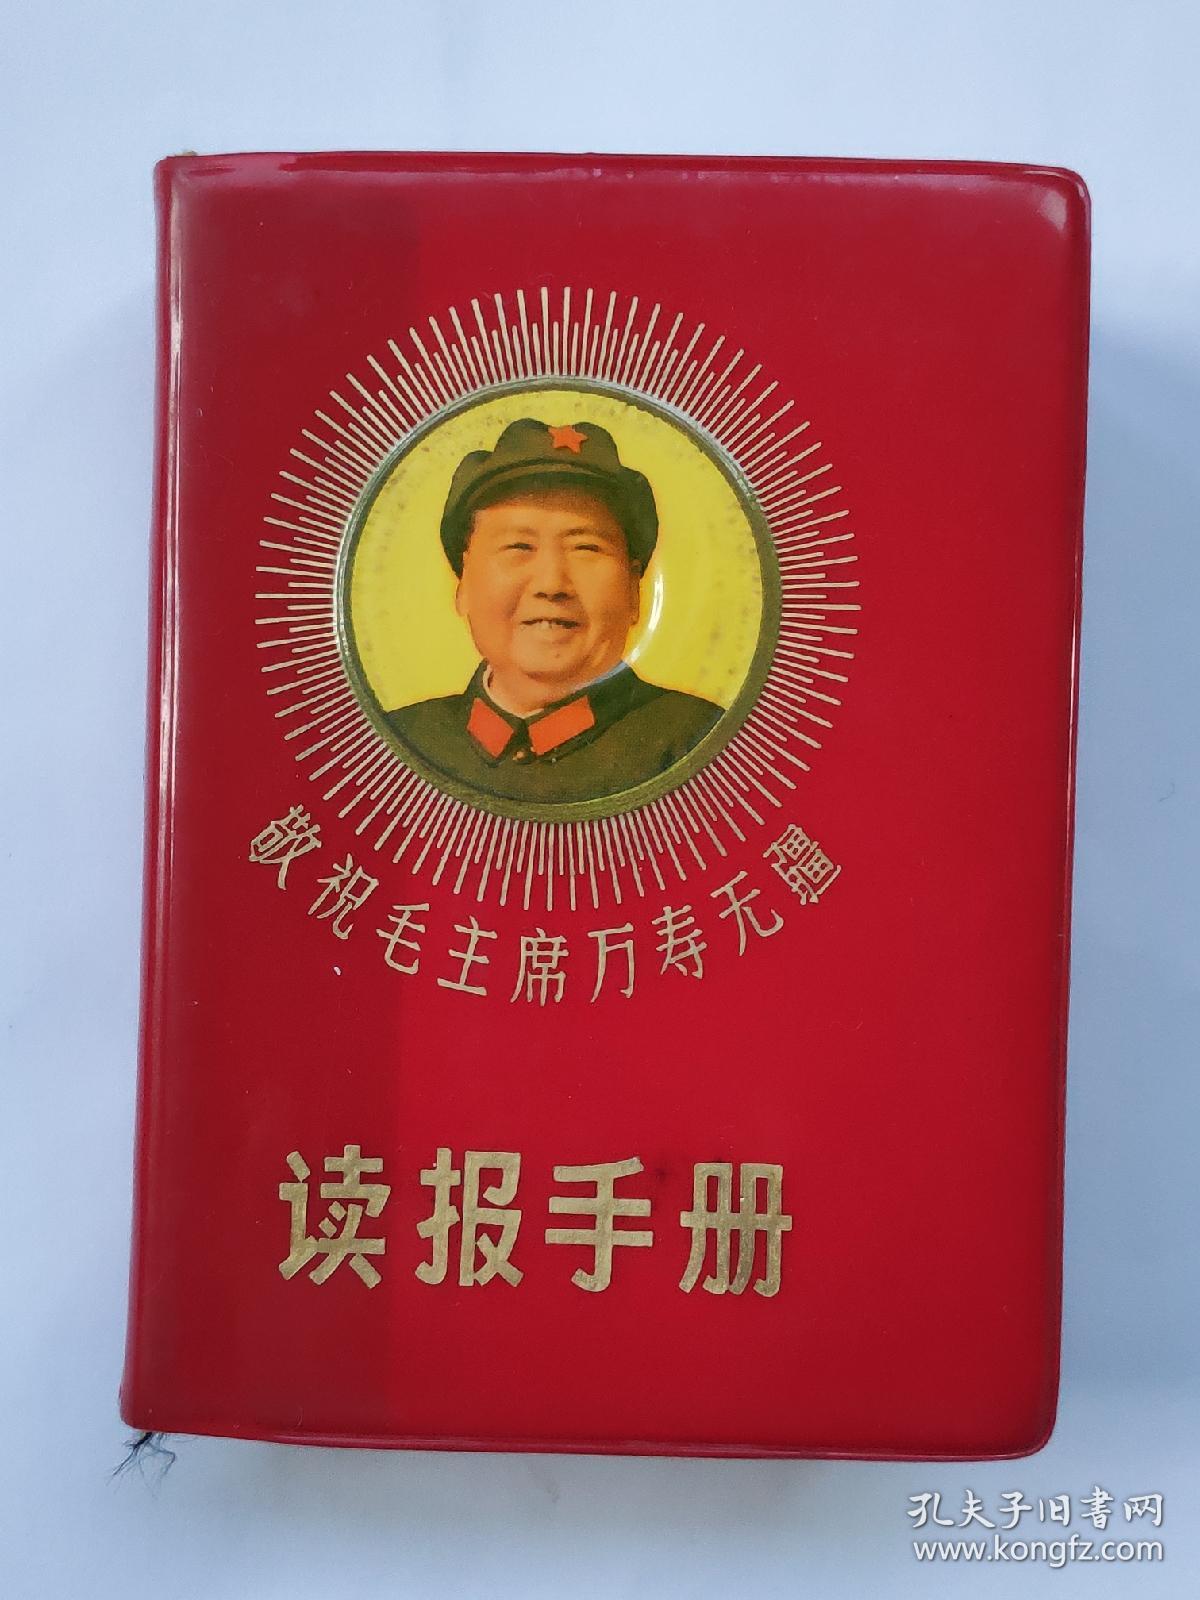 读报手册（学习参考材料）64开烫金红塑封面有毛主席军装头像，内有毛主席像一张